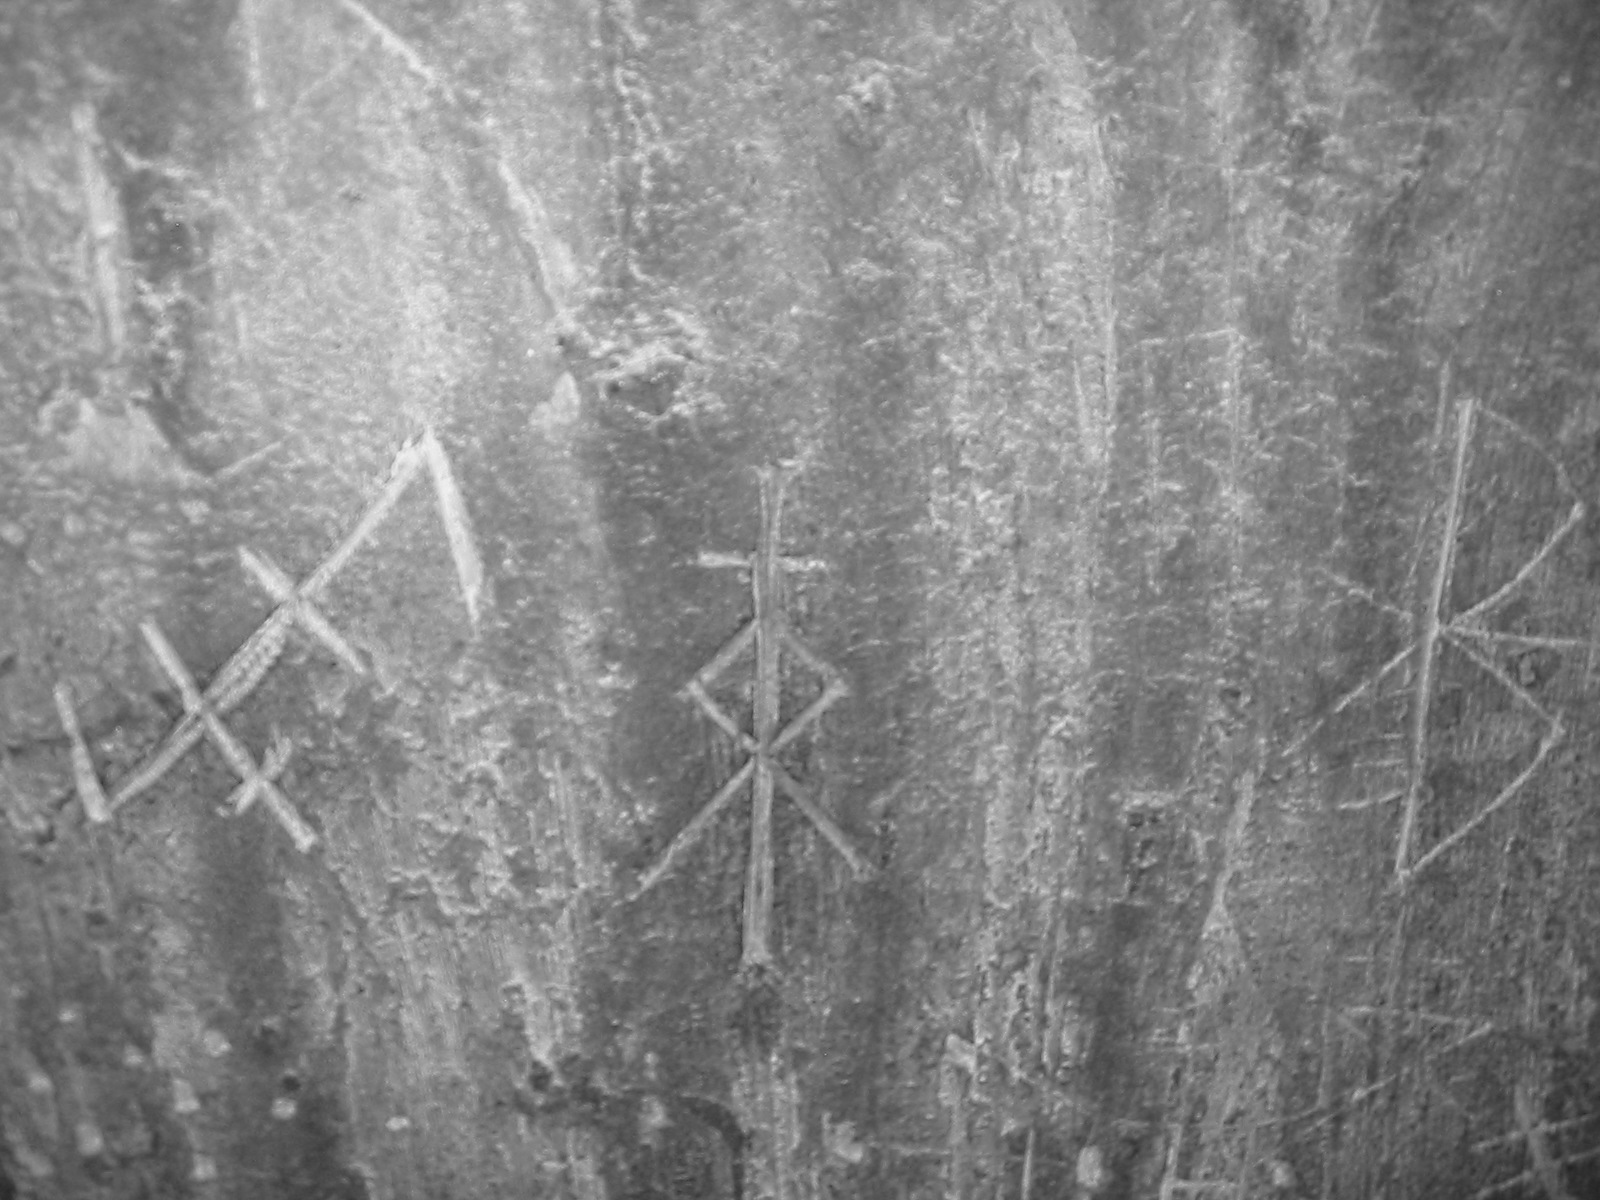 runes naines (viking)